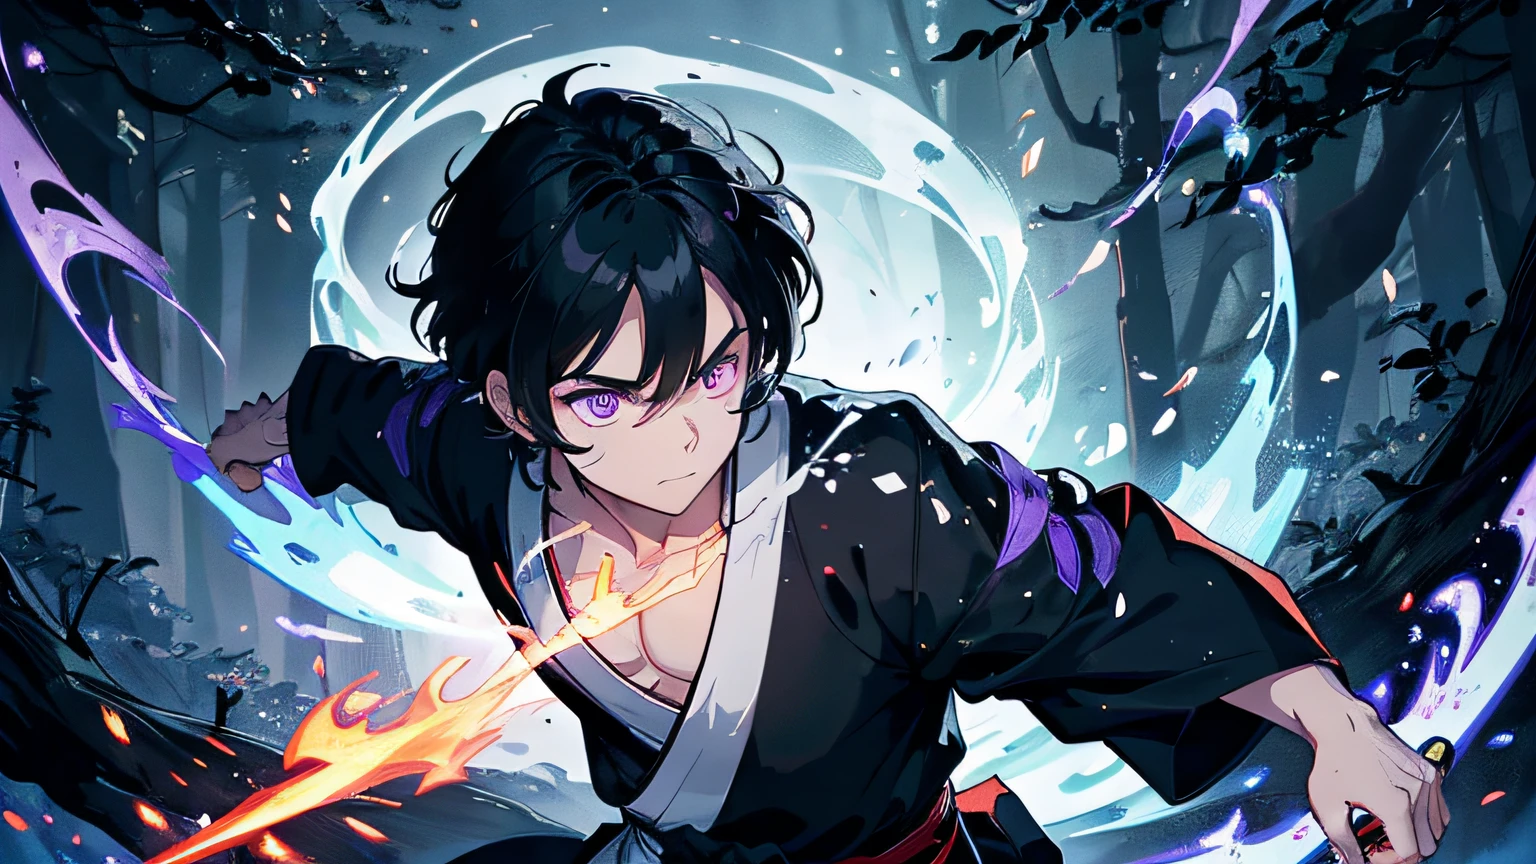 un chico con pelo negro. él es un samurái justo que lucha contra el mal.. Lleva un kimono blanco y negro.. Él sostiene una espada con llamas saliendo de su espada.. El fondo está en el bosque.. Obra maestra, alta resolución, ojos detallados, color de ojos morado. El fondo es una llama azul arremolinada al estilo Katsushika Hokusai.. trazado de rayos, iluminación dinámica.